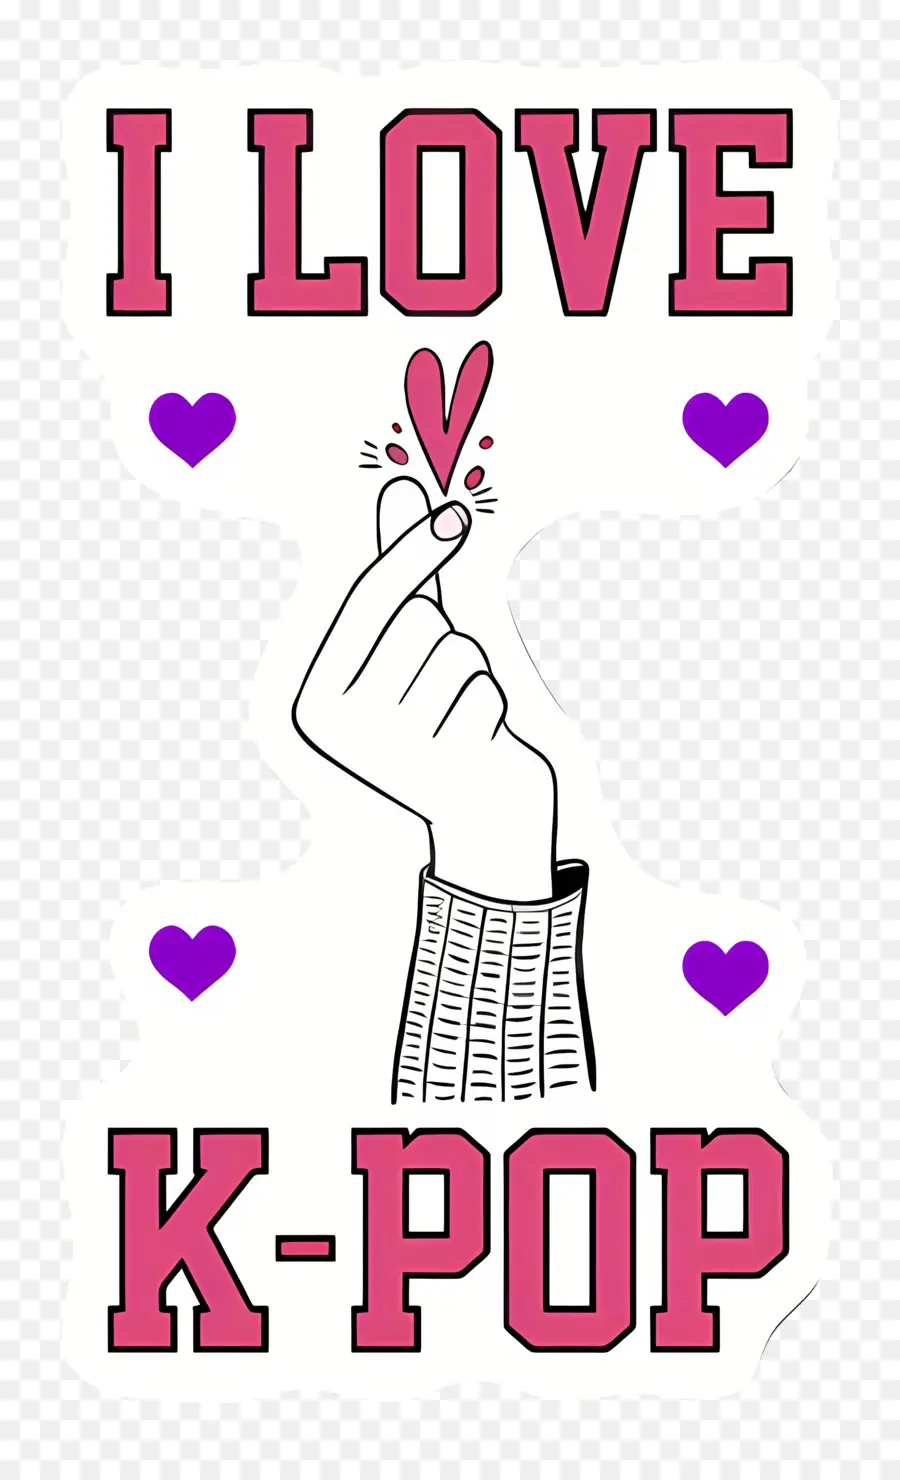 kpop k-pop tôi yêu k-pop sticker k-pop - Nền đen với văn bản màu hồng và trái tim